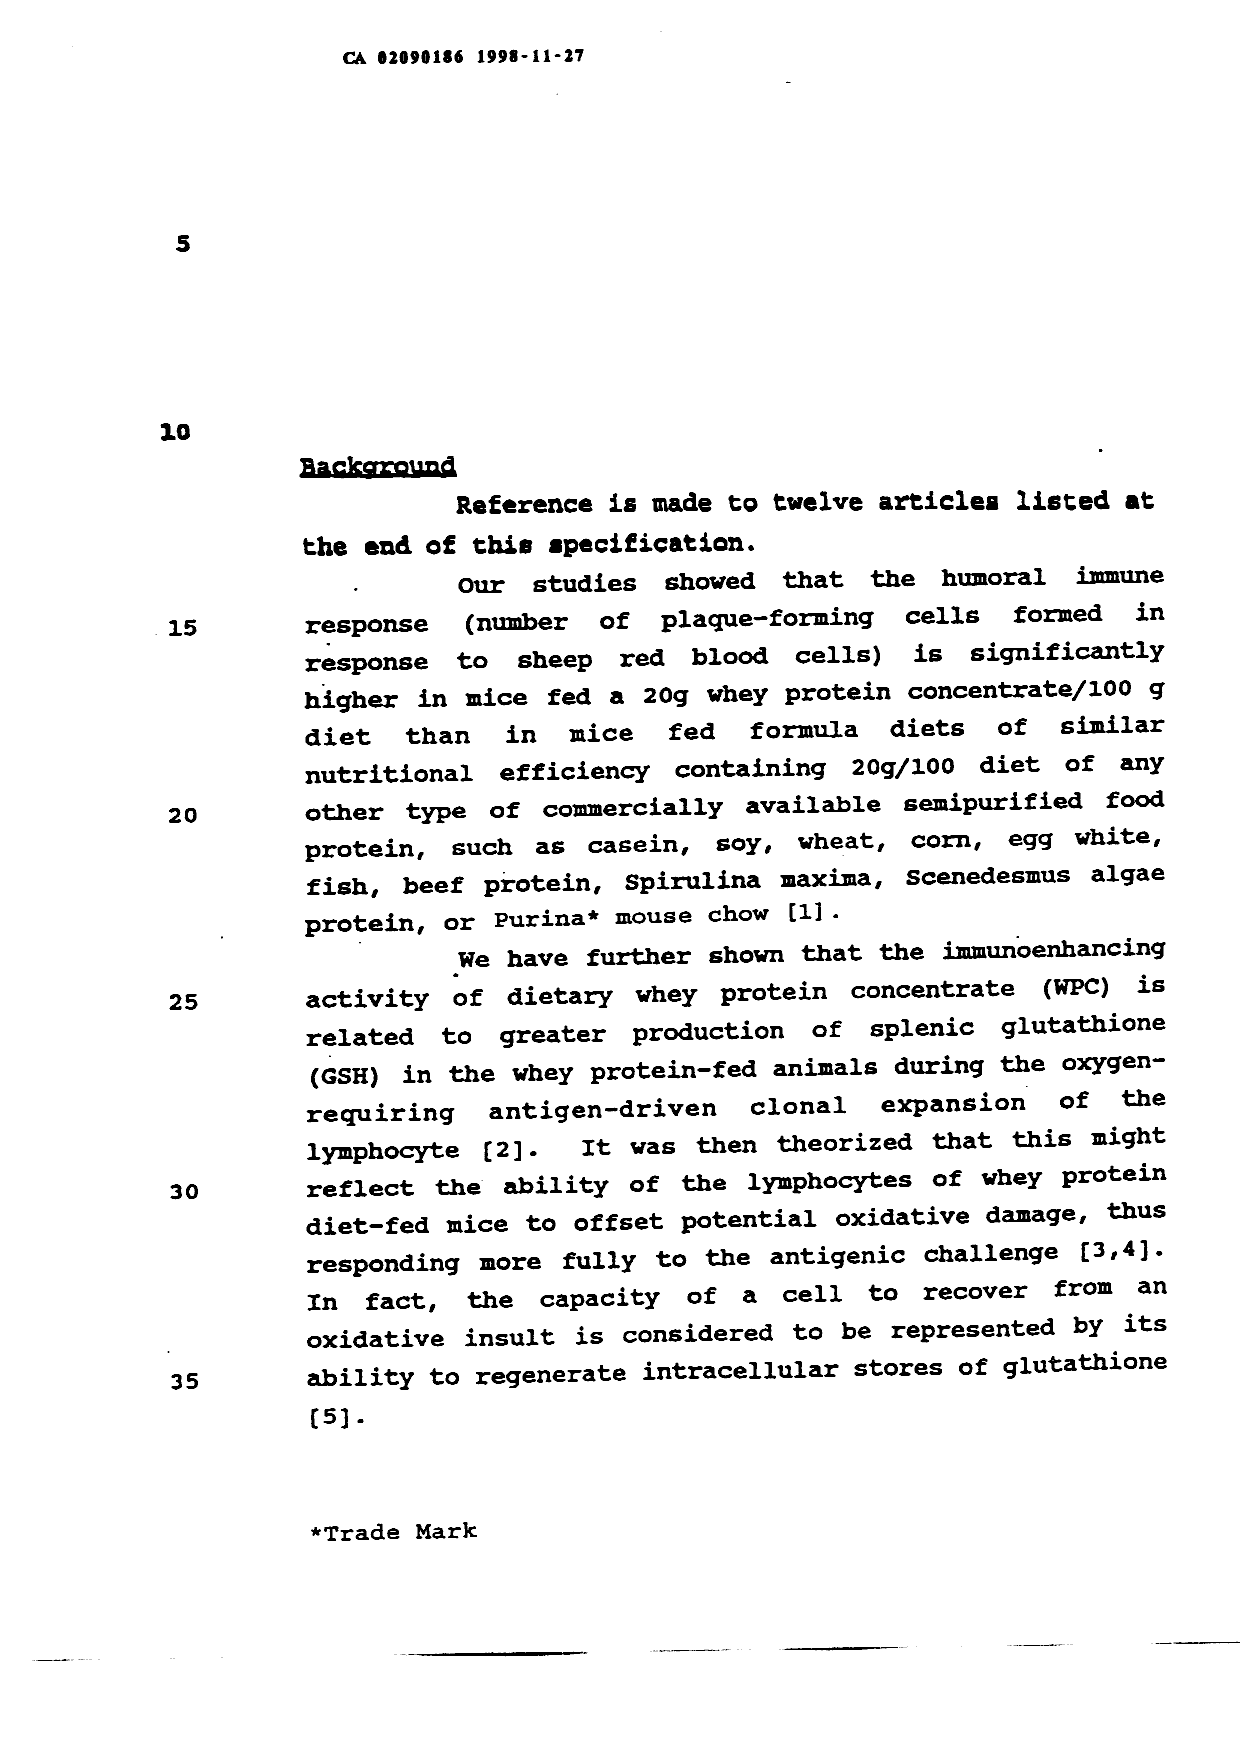 Canadian Patent Document 2090186. Description 19971227. Image 1 of 15